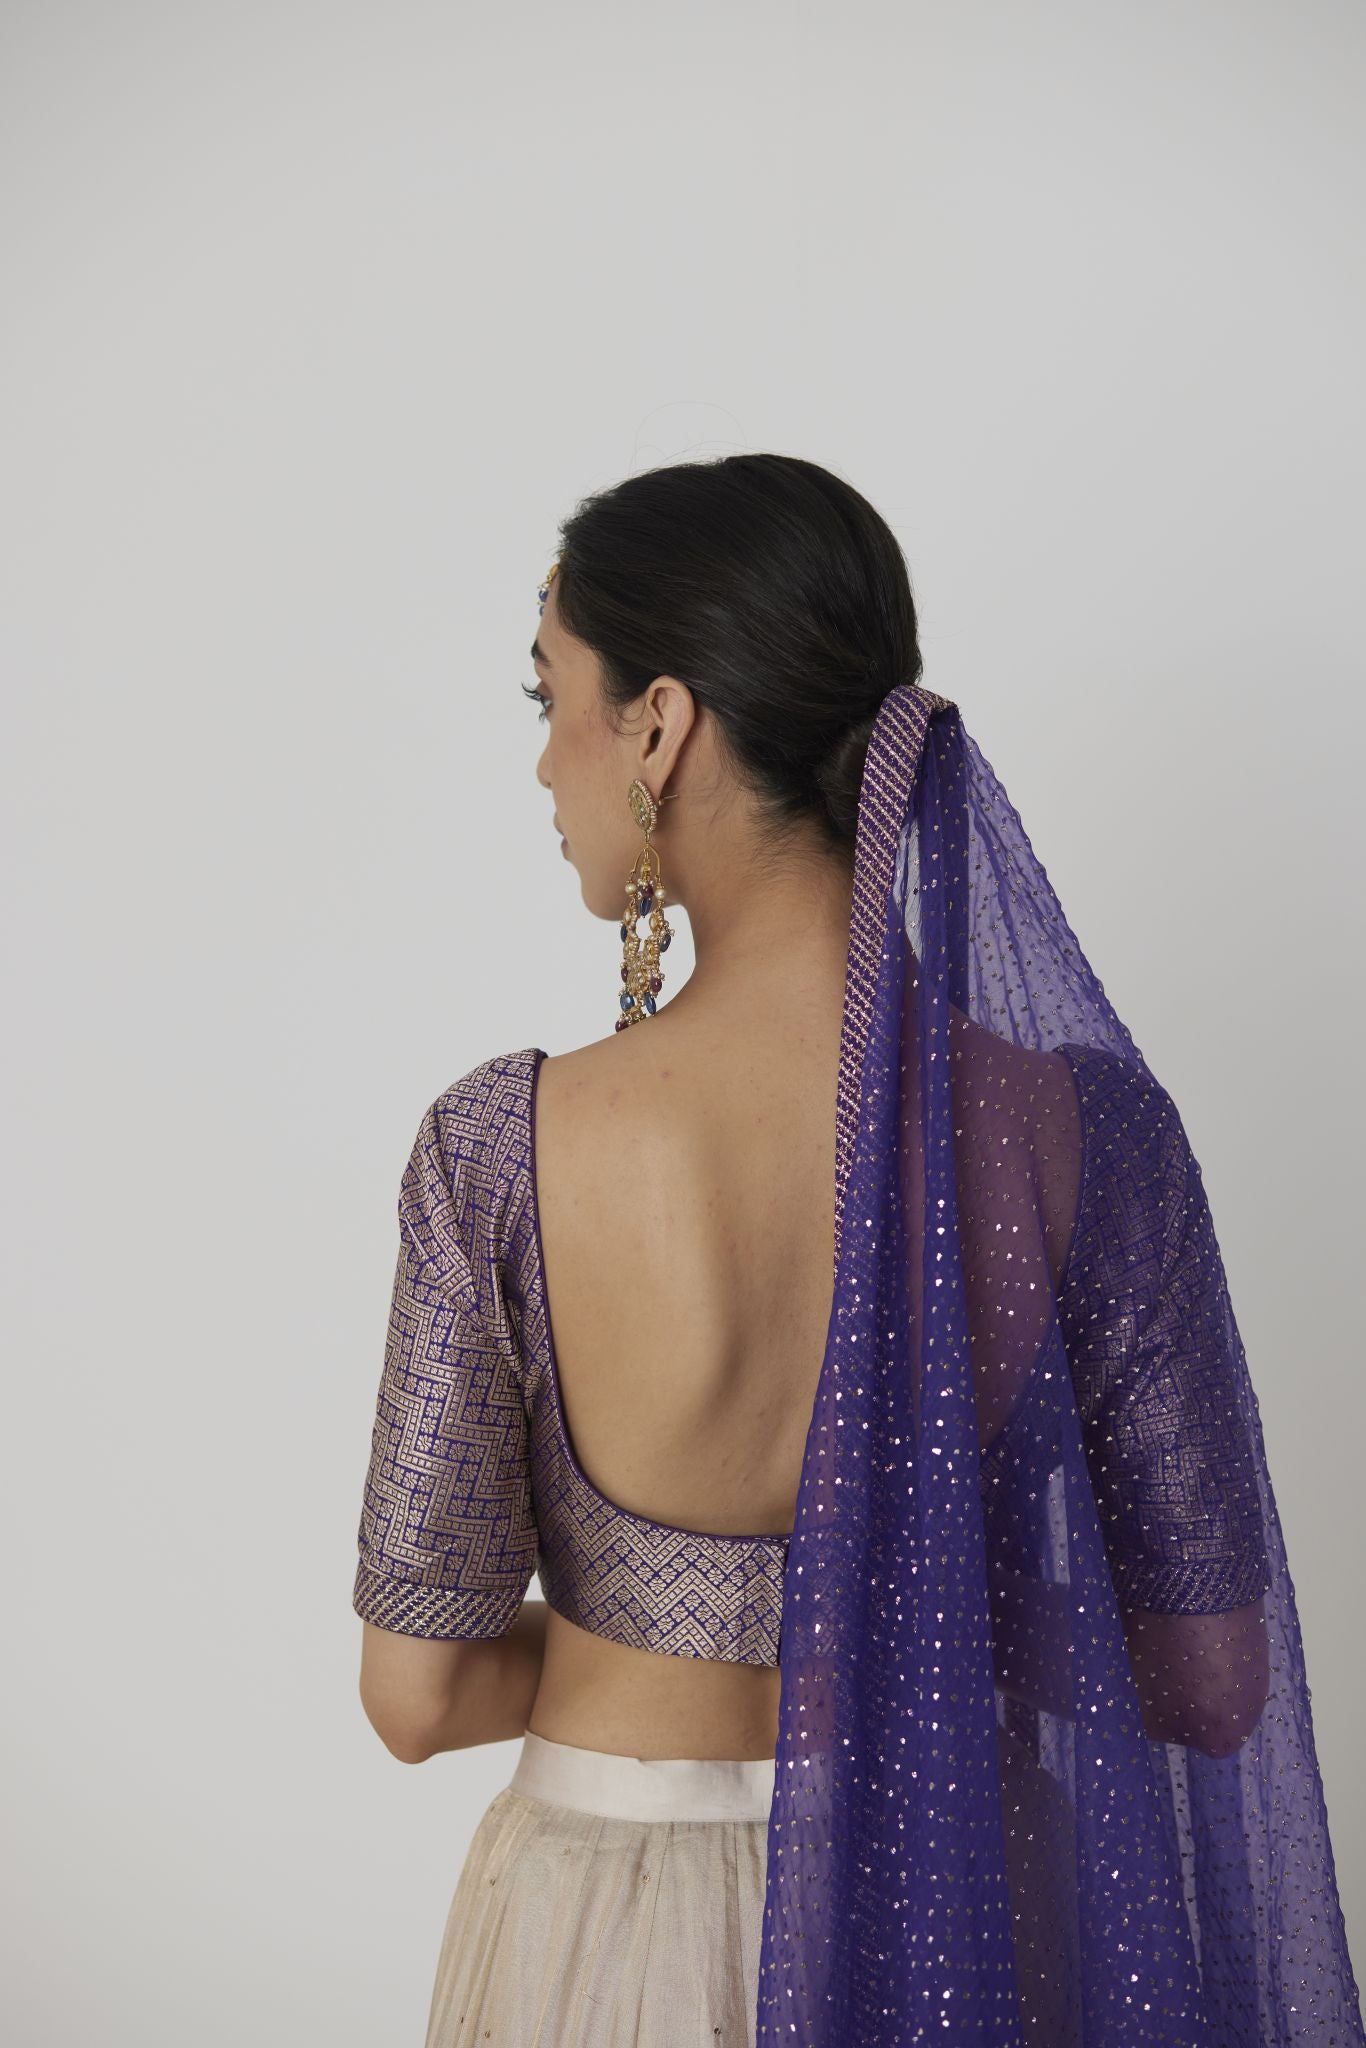 Banarasi Sarees Blouse Design Latest | Saree blouse designs latest, Bridal blouse  designs, Blouse designs silk